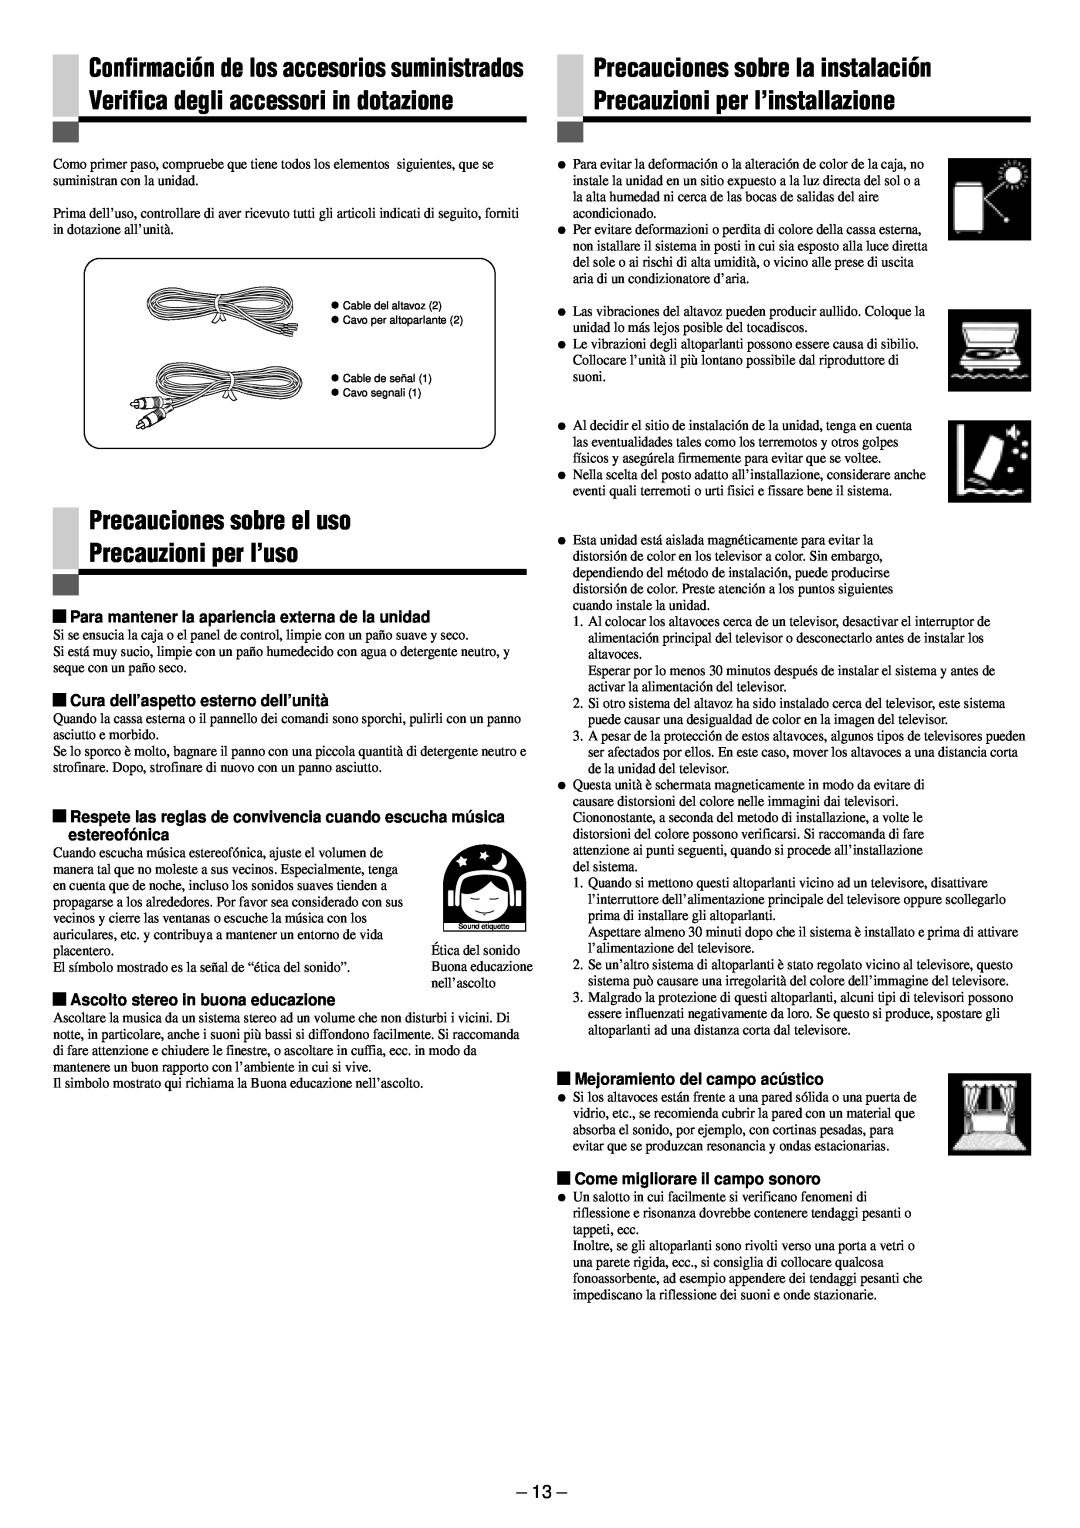 JVC SP-PW880 manual Precauciones sobre el uso Precauzioni per l’uso, Precauciones sobre la instalación 